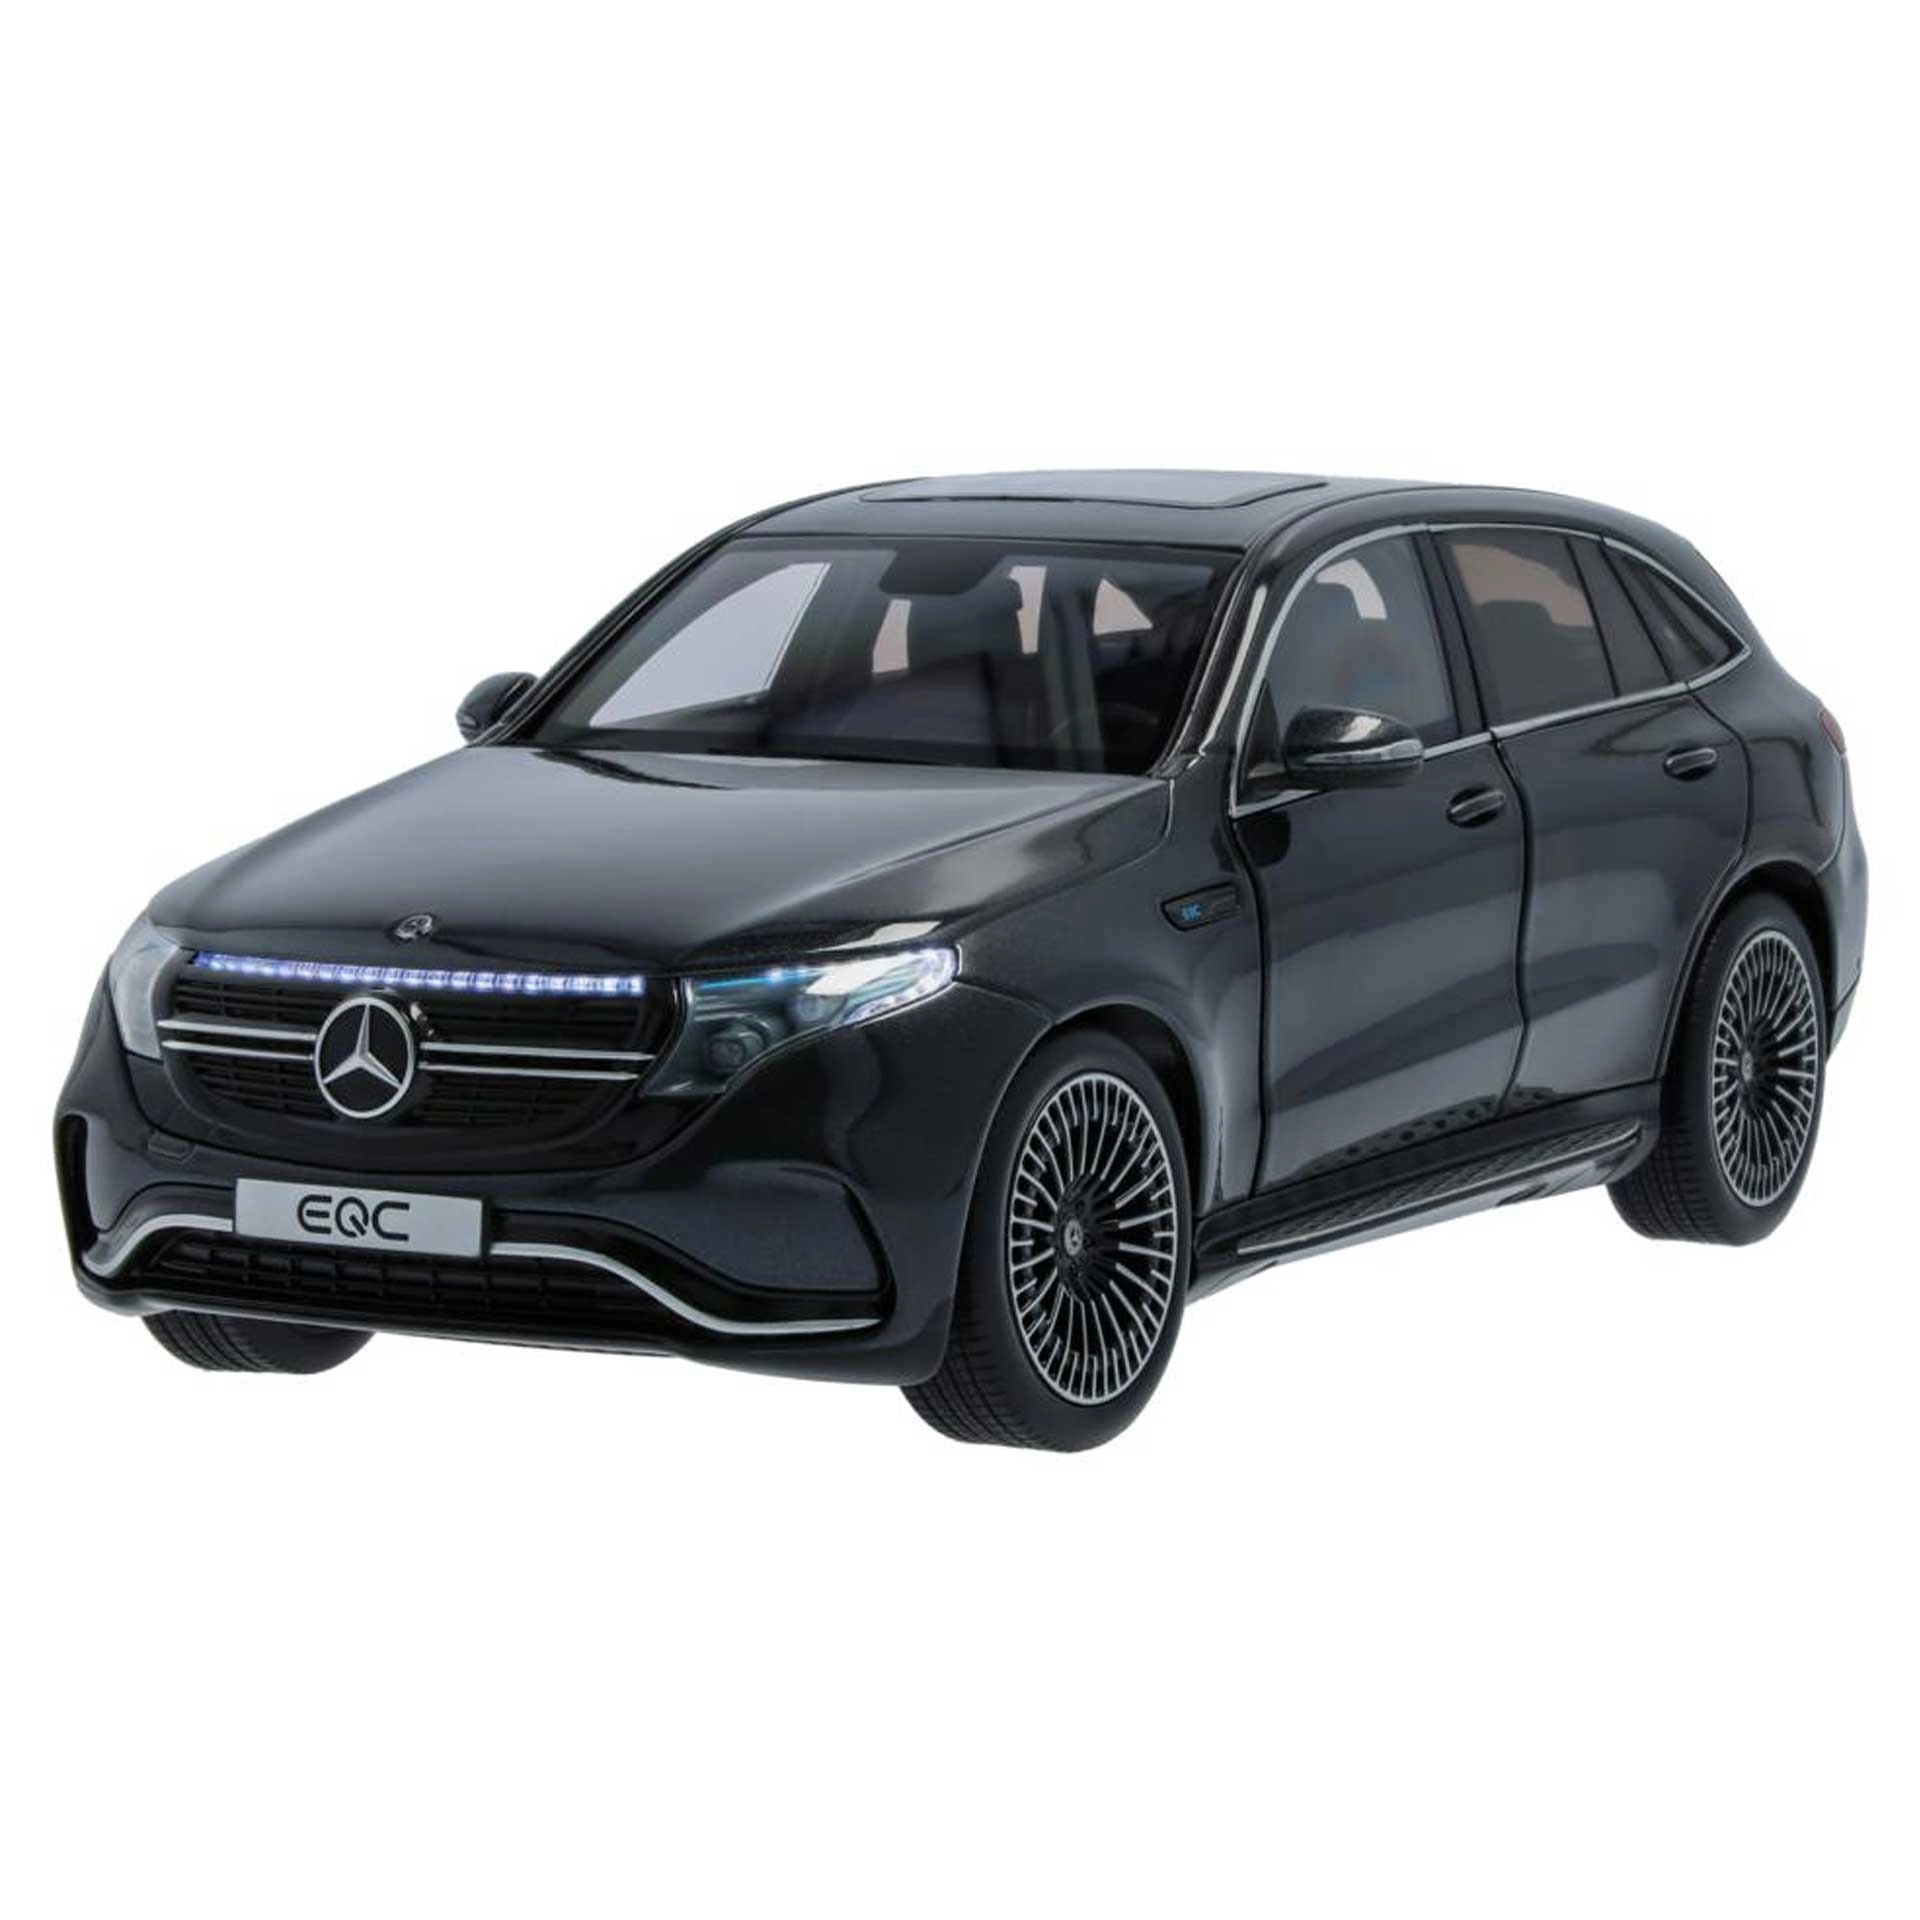 Mercedes-Benz Modellauto EQC mit Beleuchtung N293 1:18 graphitgrau